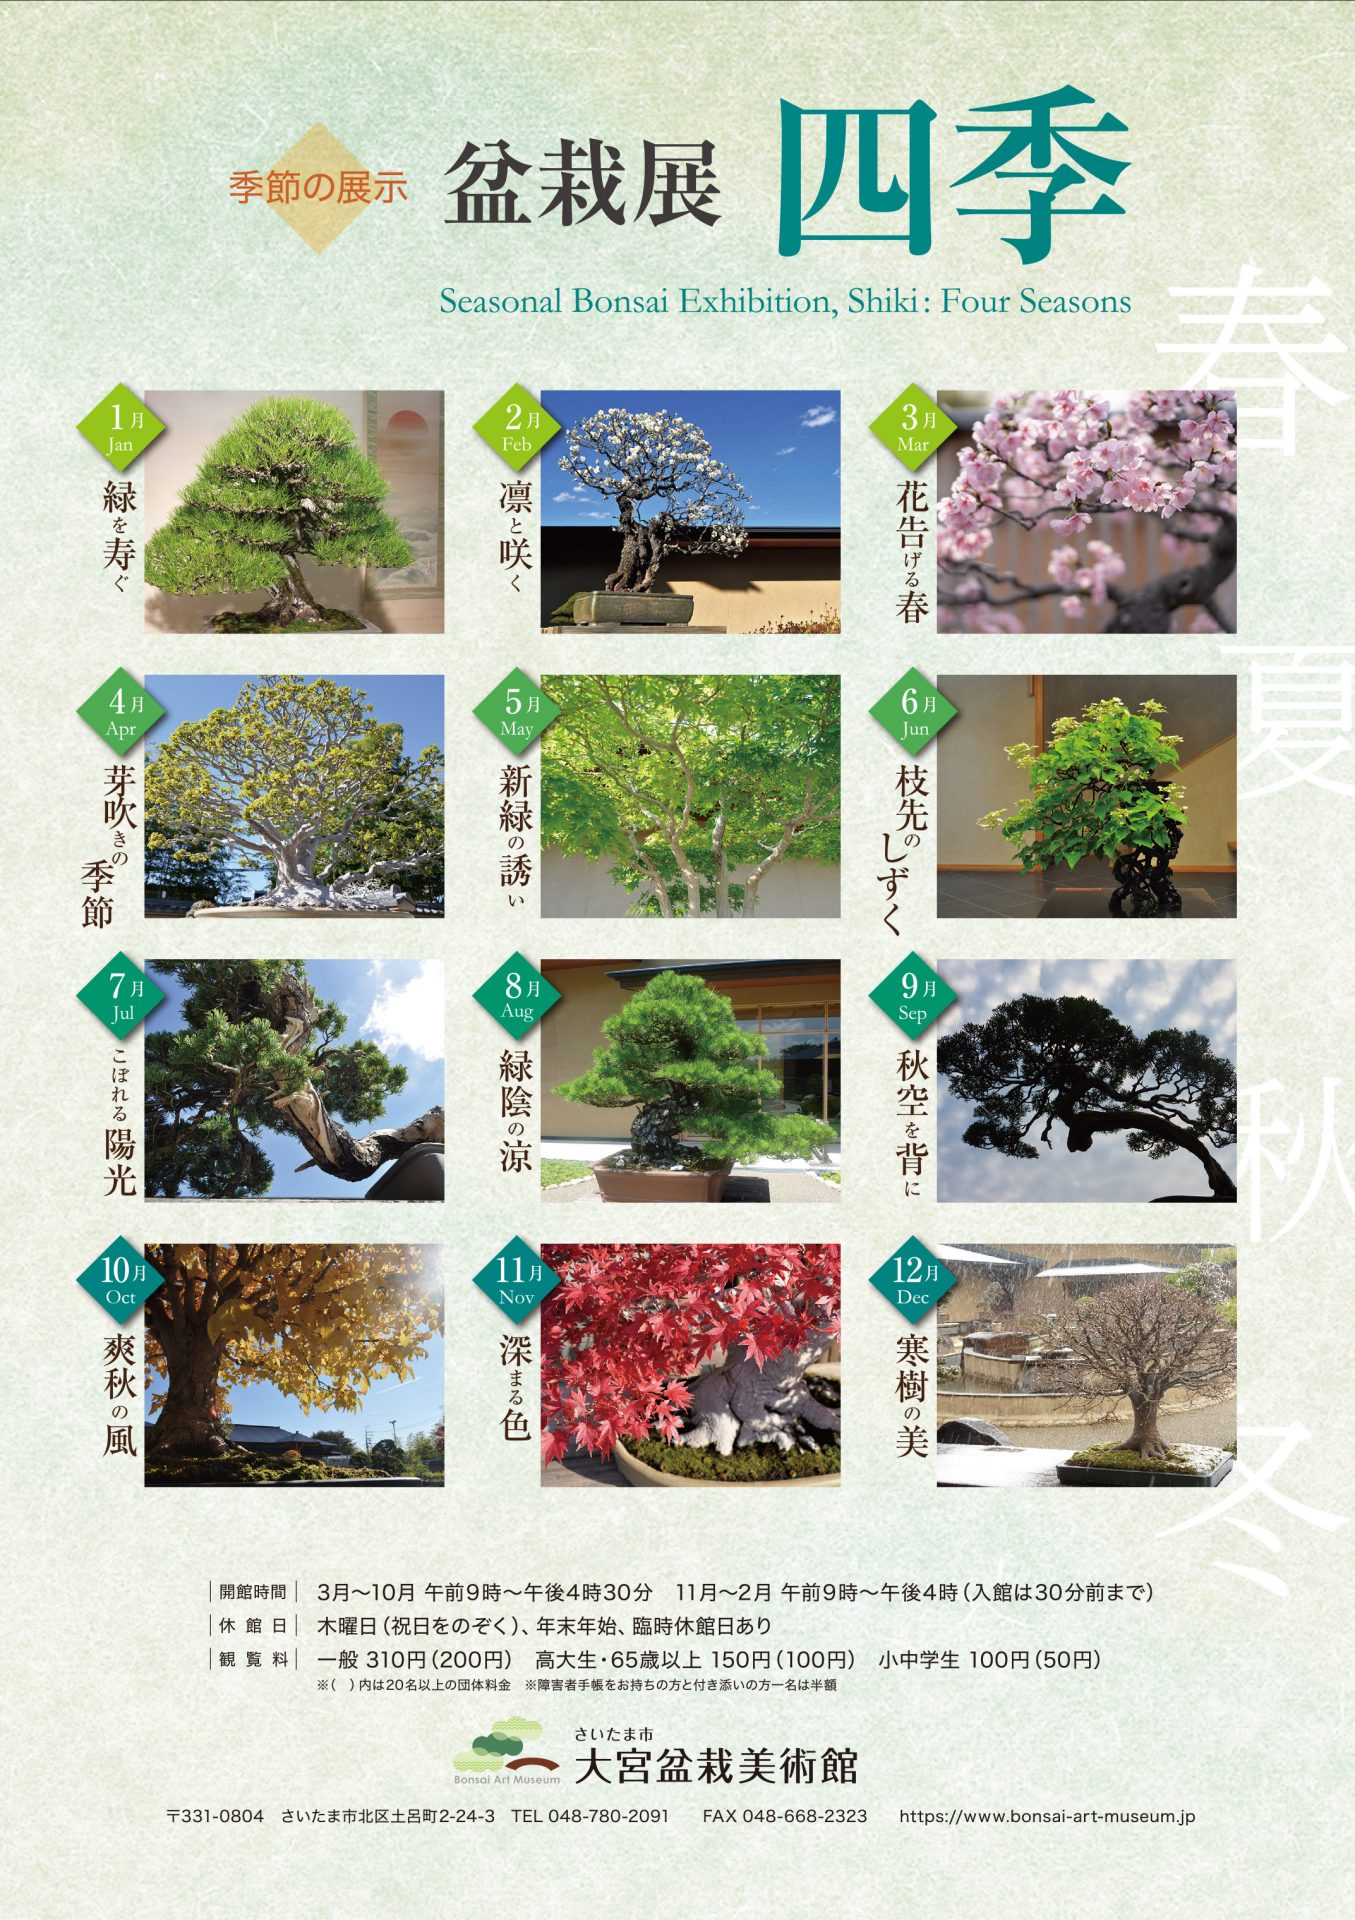 Seasonal Bonsai Exhibition, Shiki: Four Seasons, September, With the Autumn Sky